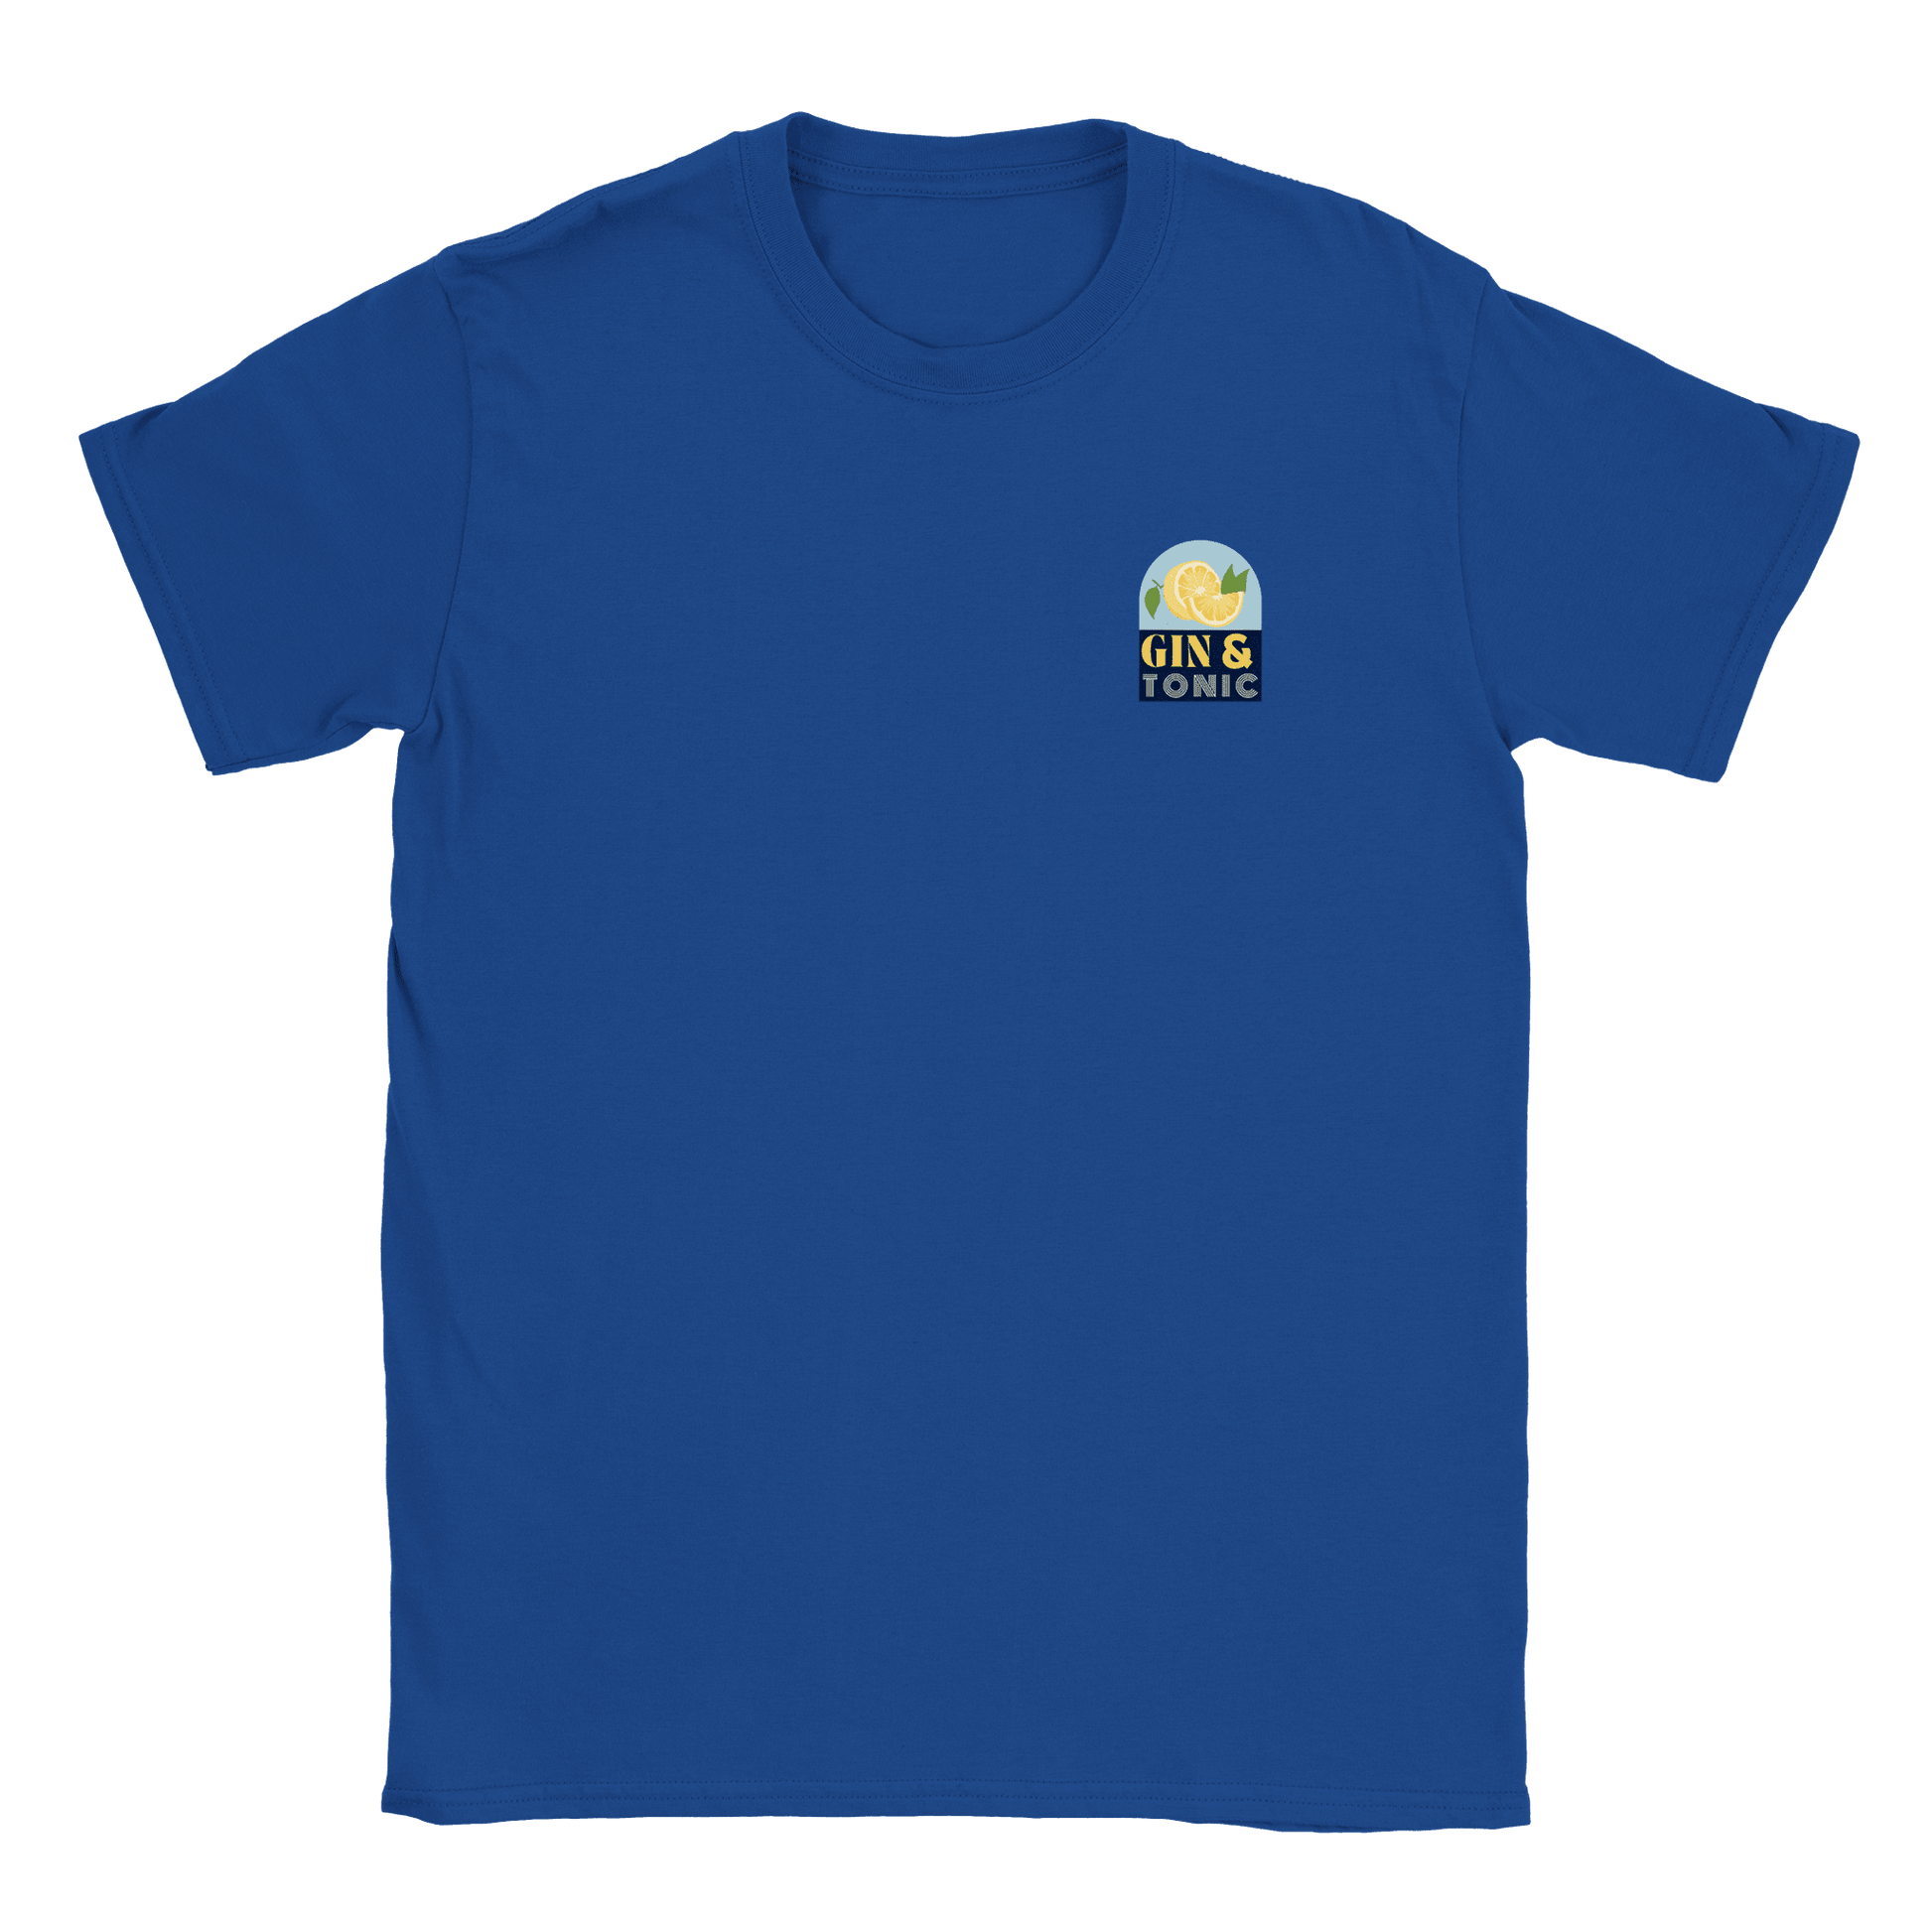 Gin & Tonic litet tryck - T-shirt Blå